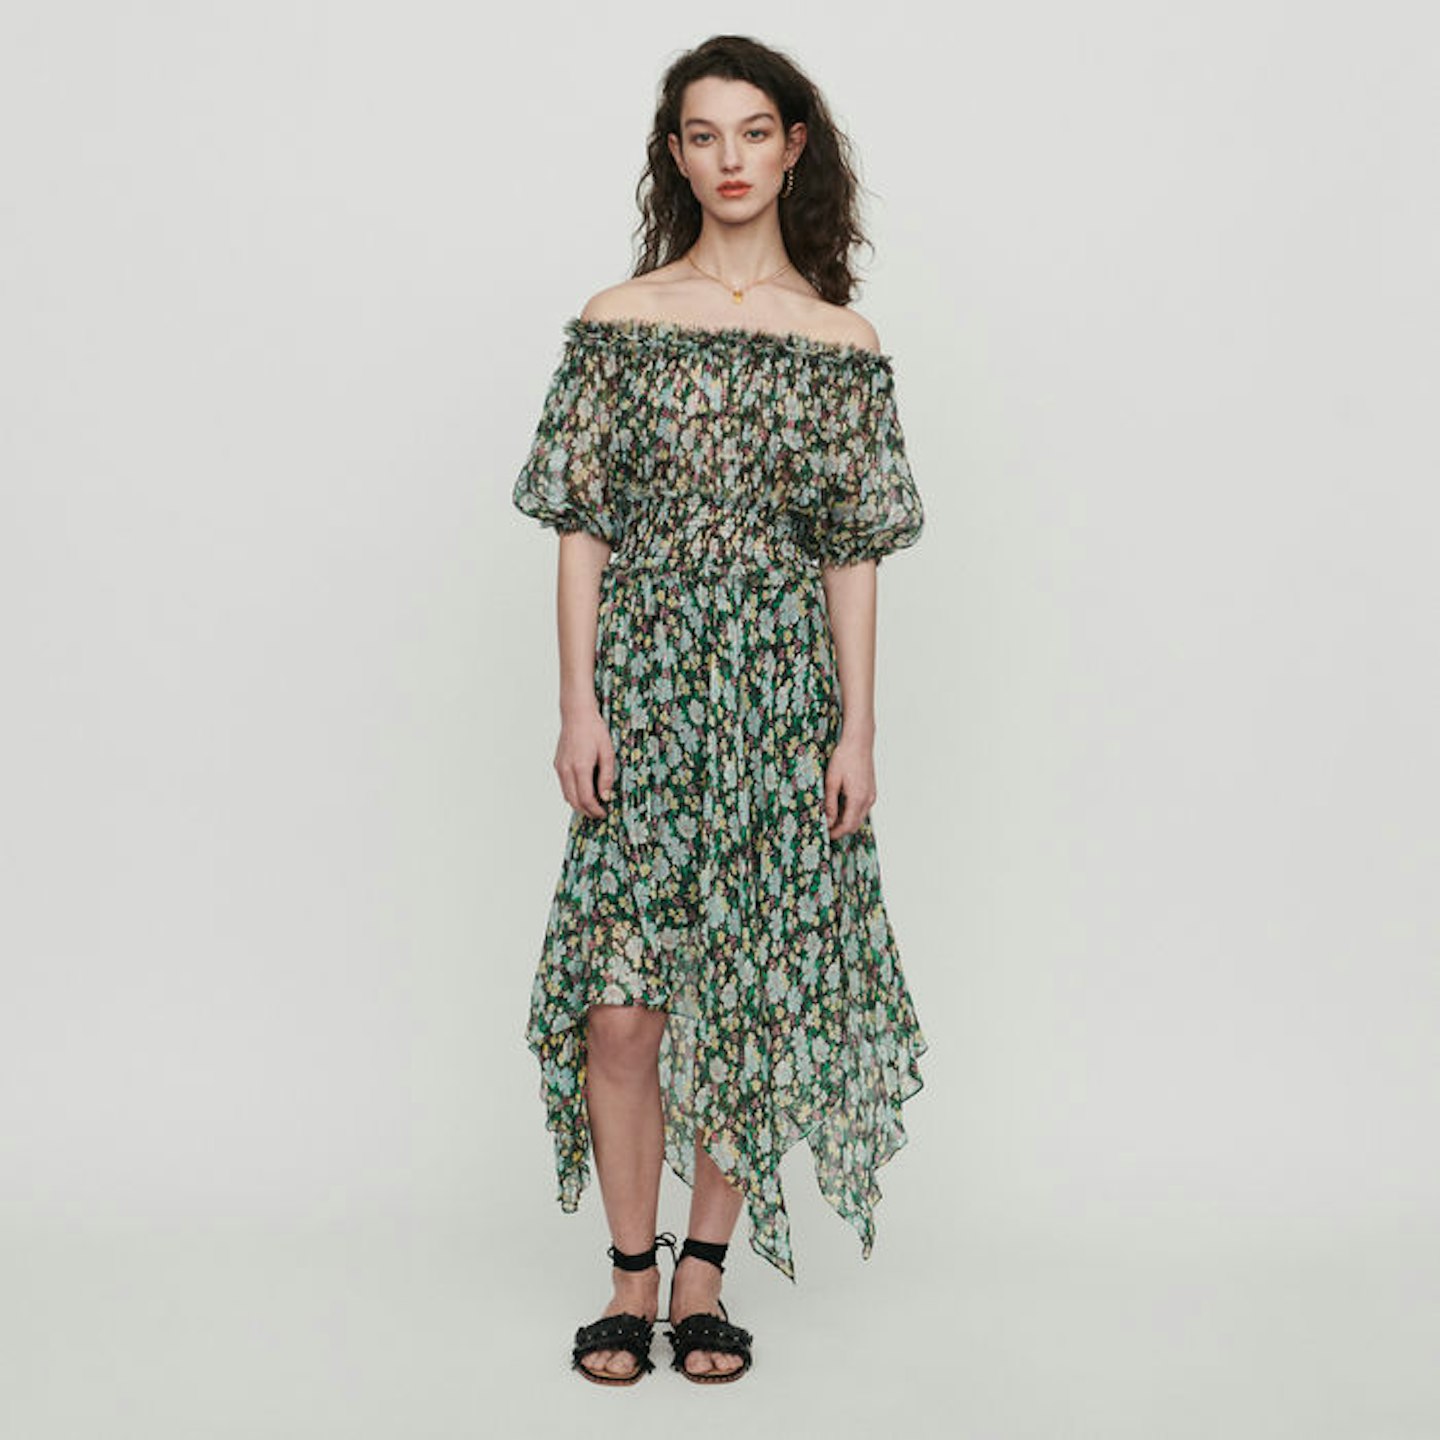 Off-Shoulder Dress in Floral Print, £420